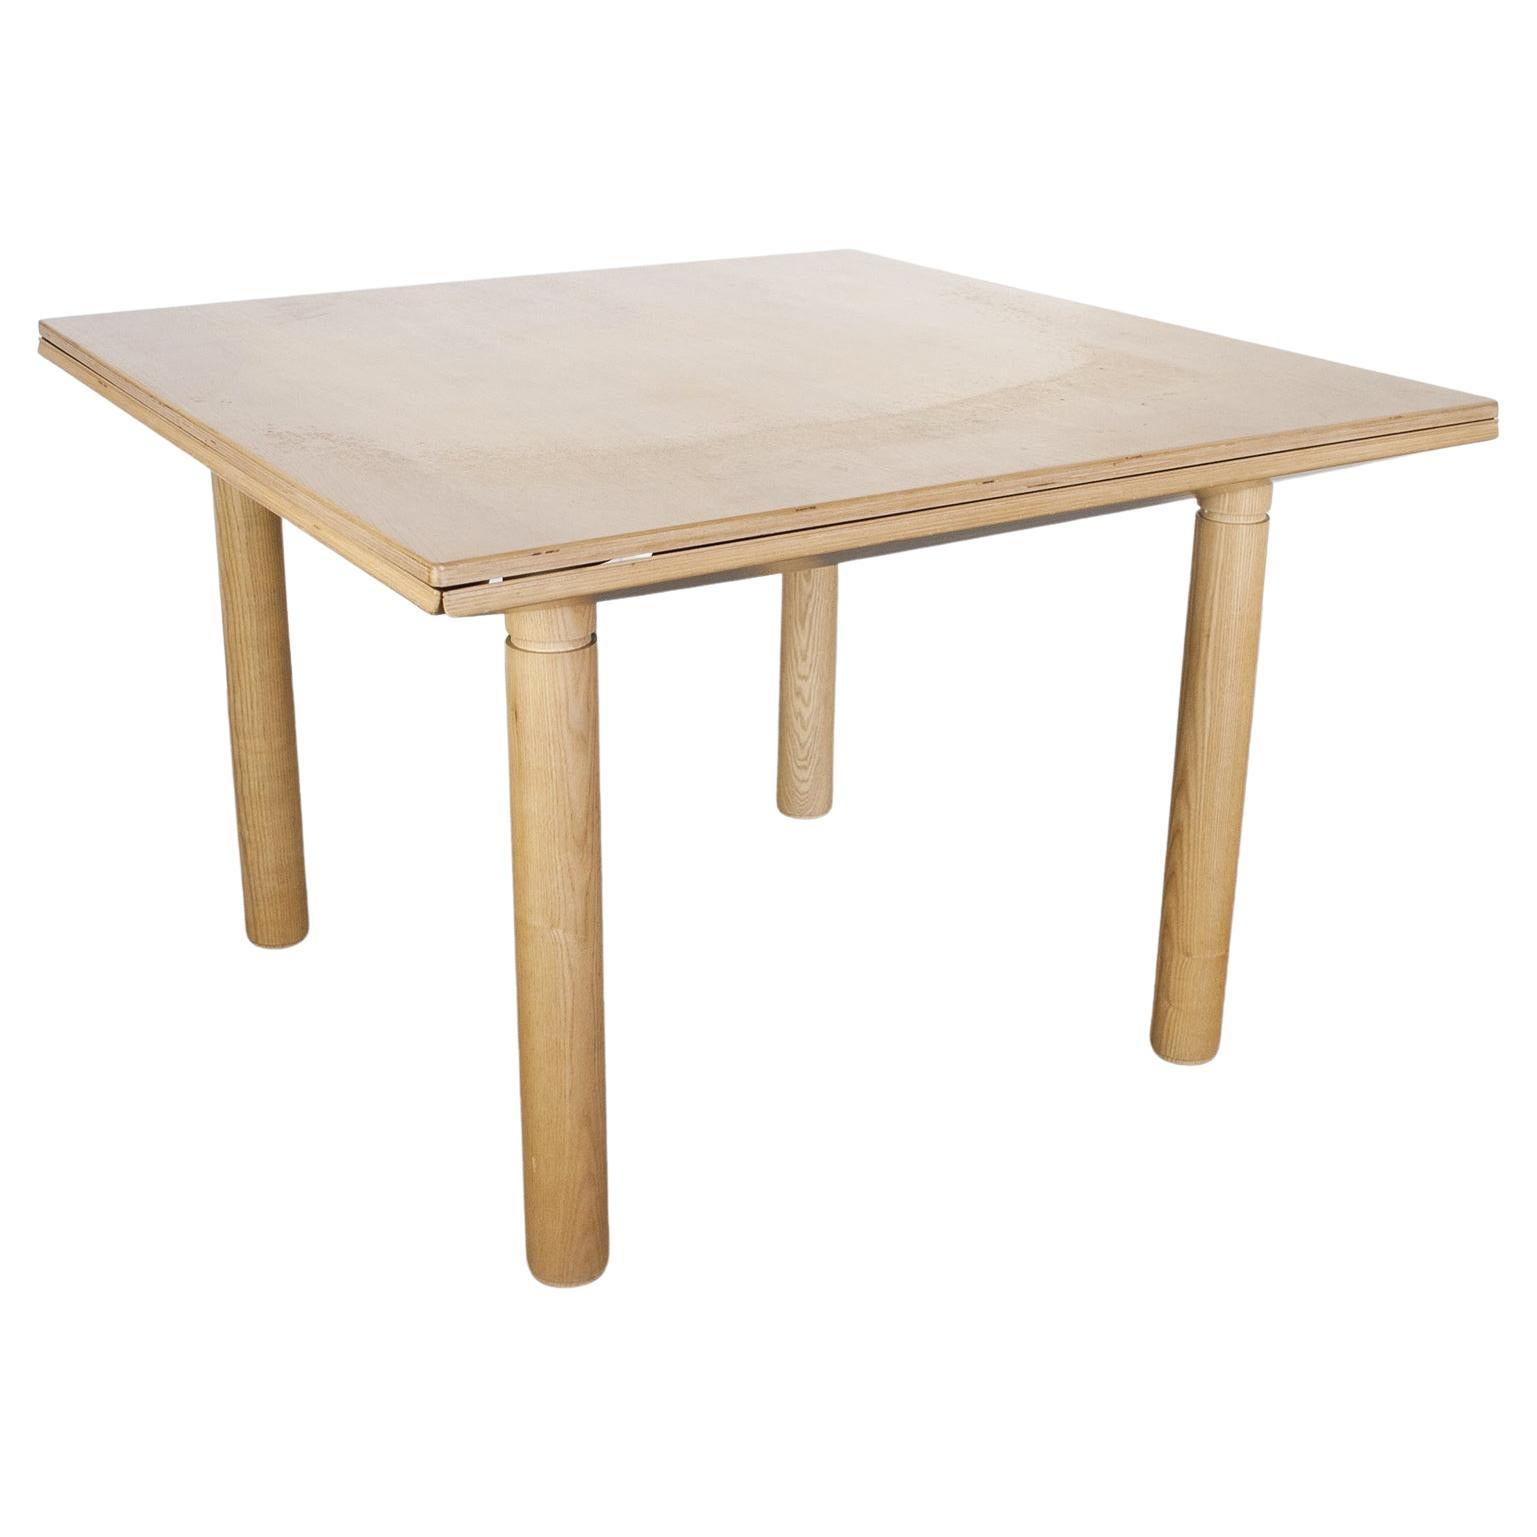 Table Giotto dessinée par Gigi Sabadin en 1972, la table en bois change de forme, s'adapte en passant du rond au carré, des figures géométriques qui s'alternent comme dans un jeu de proportions .

Il a reçu plusieurs prix et publications. Il s'agit